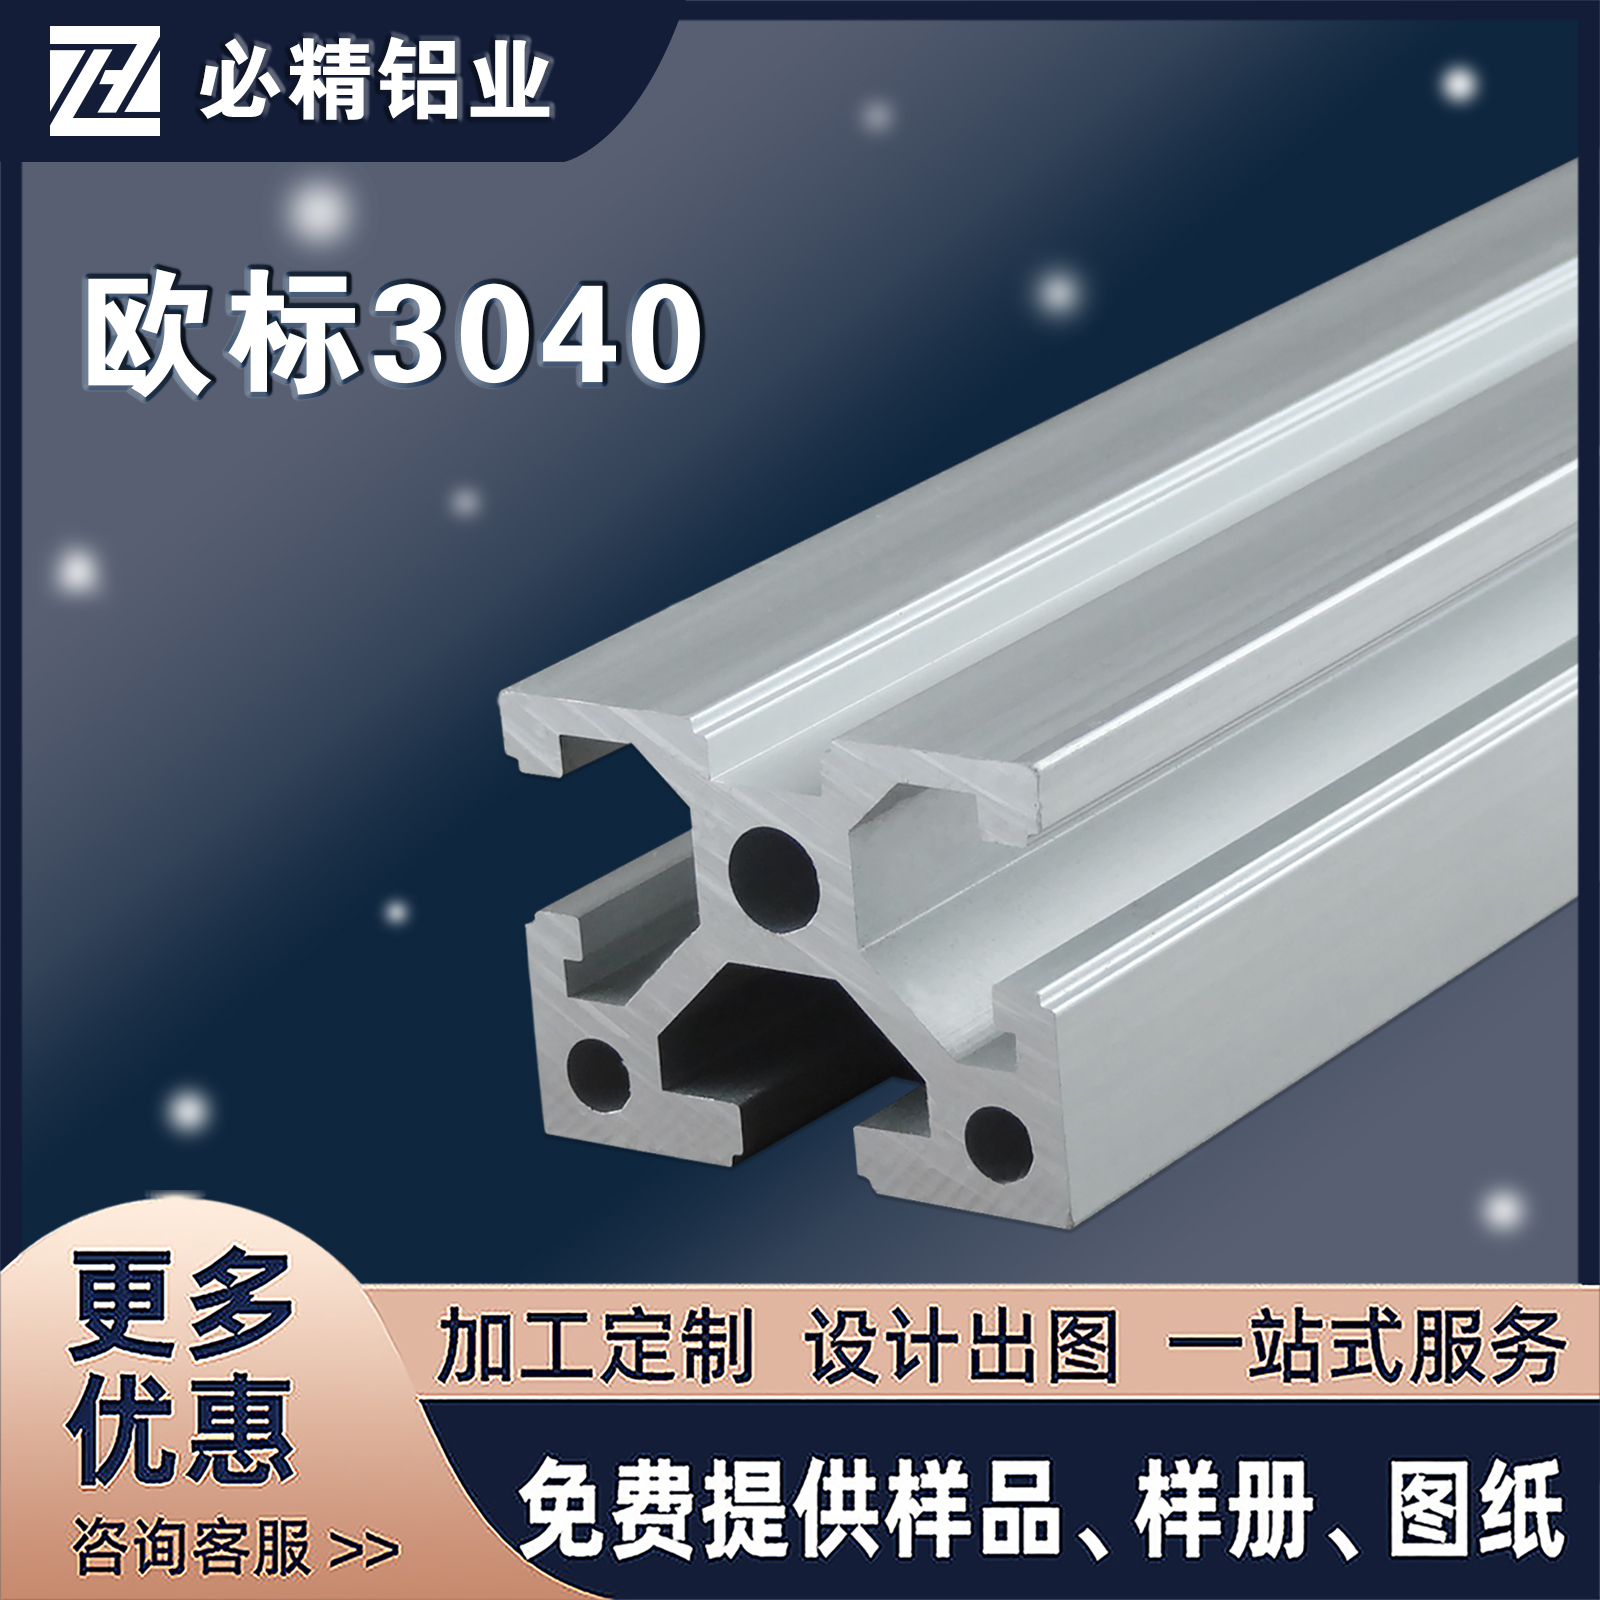 厂家促销欧标铝型材3040喷砂工业铝合金型材铝材铝管流水线支架框